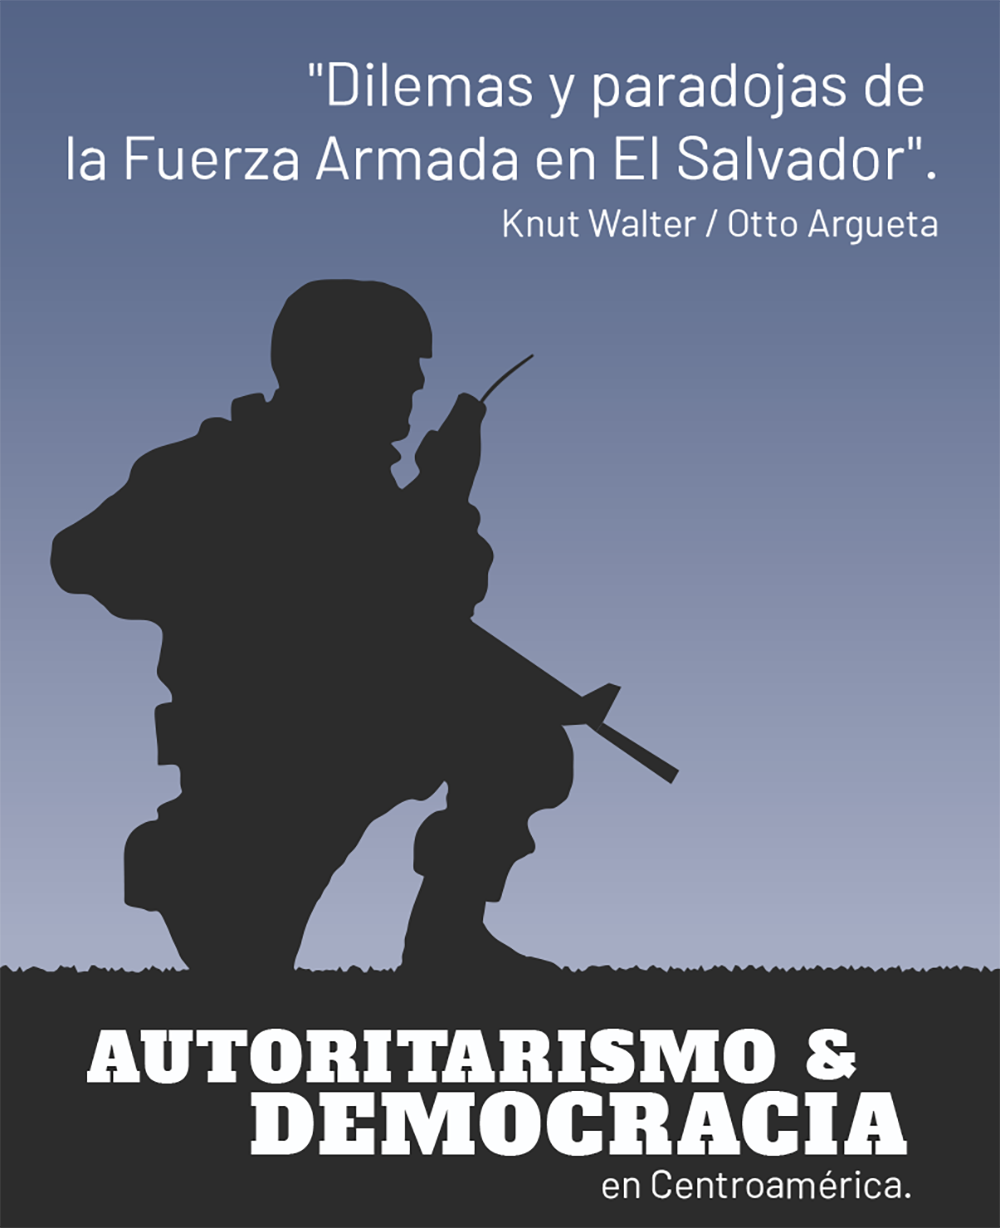 Dilemas y paradojas de la Fuerza Armada en El Salvador